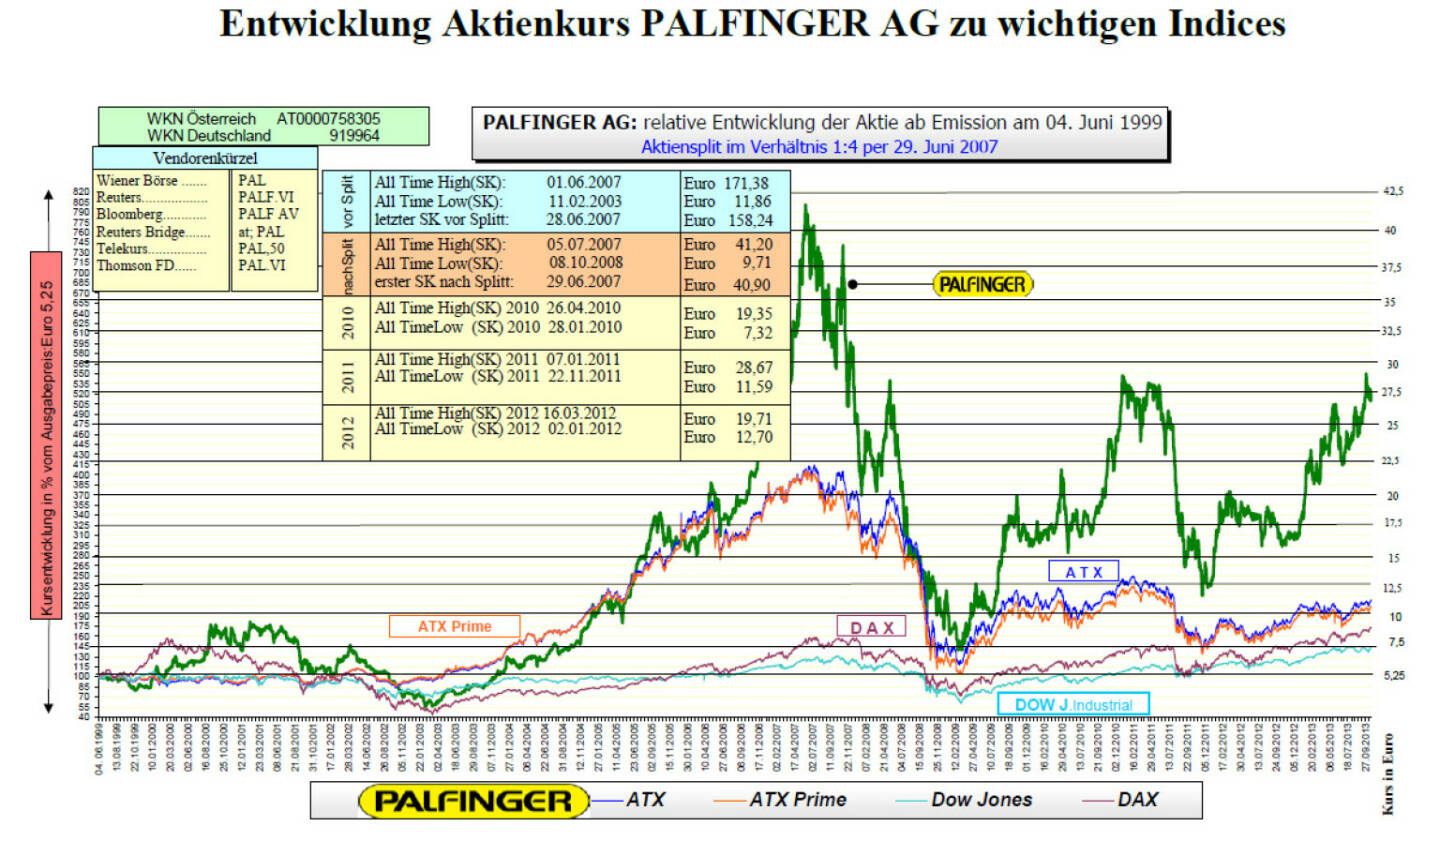 Palfinger-Aktie seit IPO (c) Palfinger